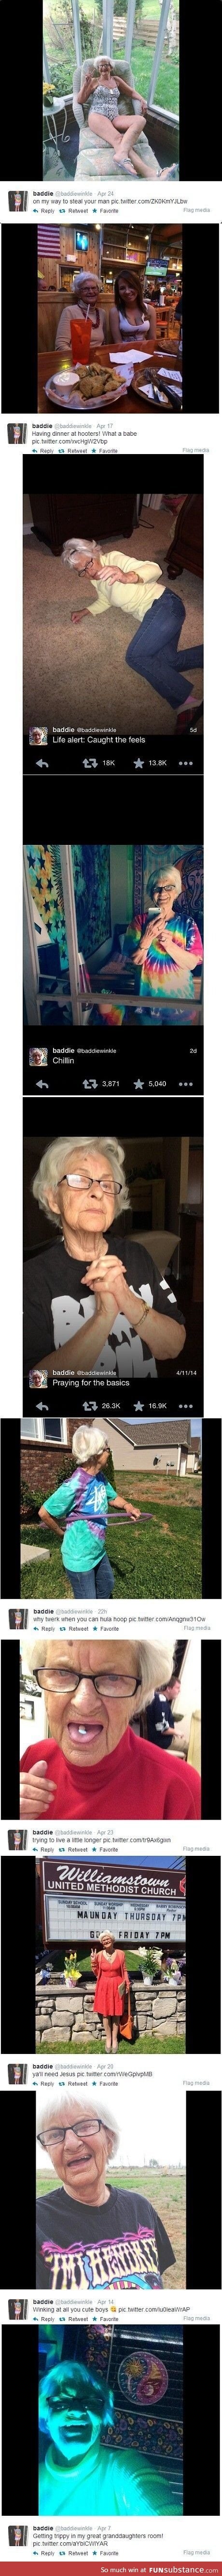 This grandma